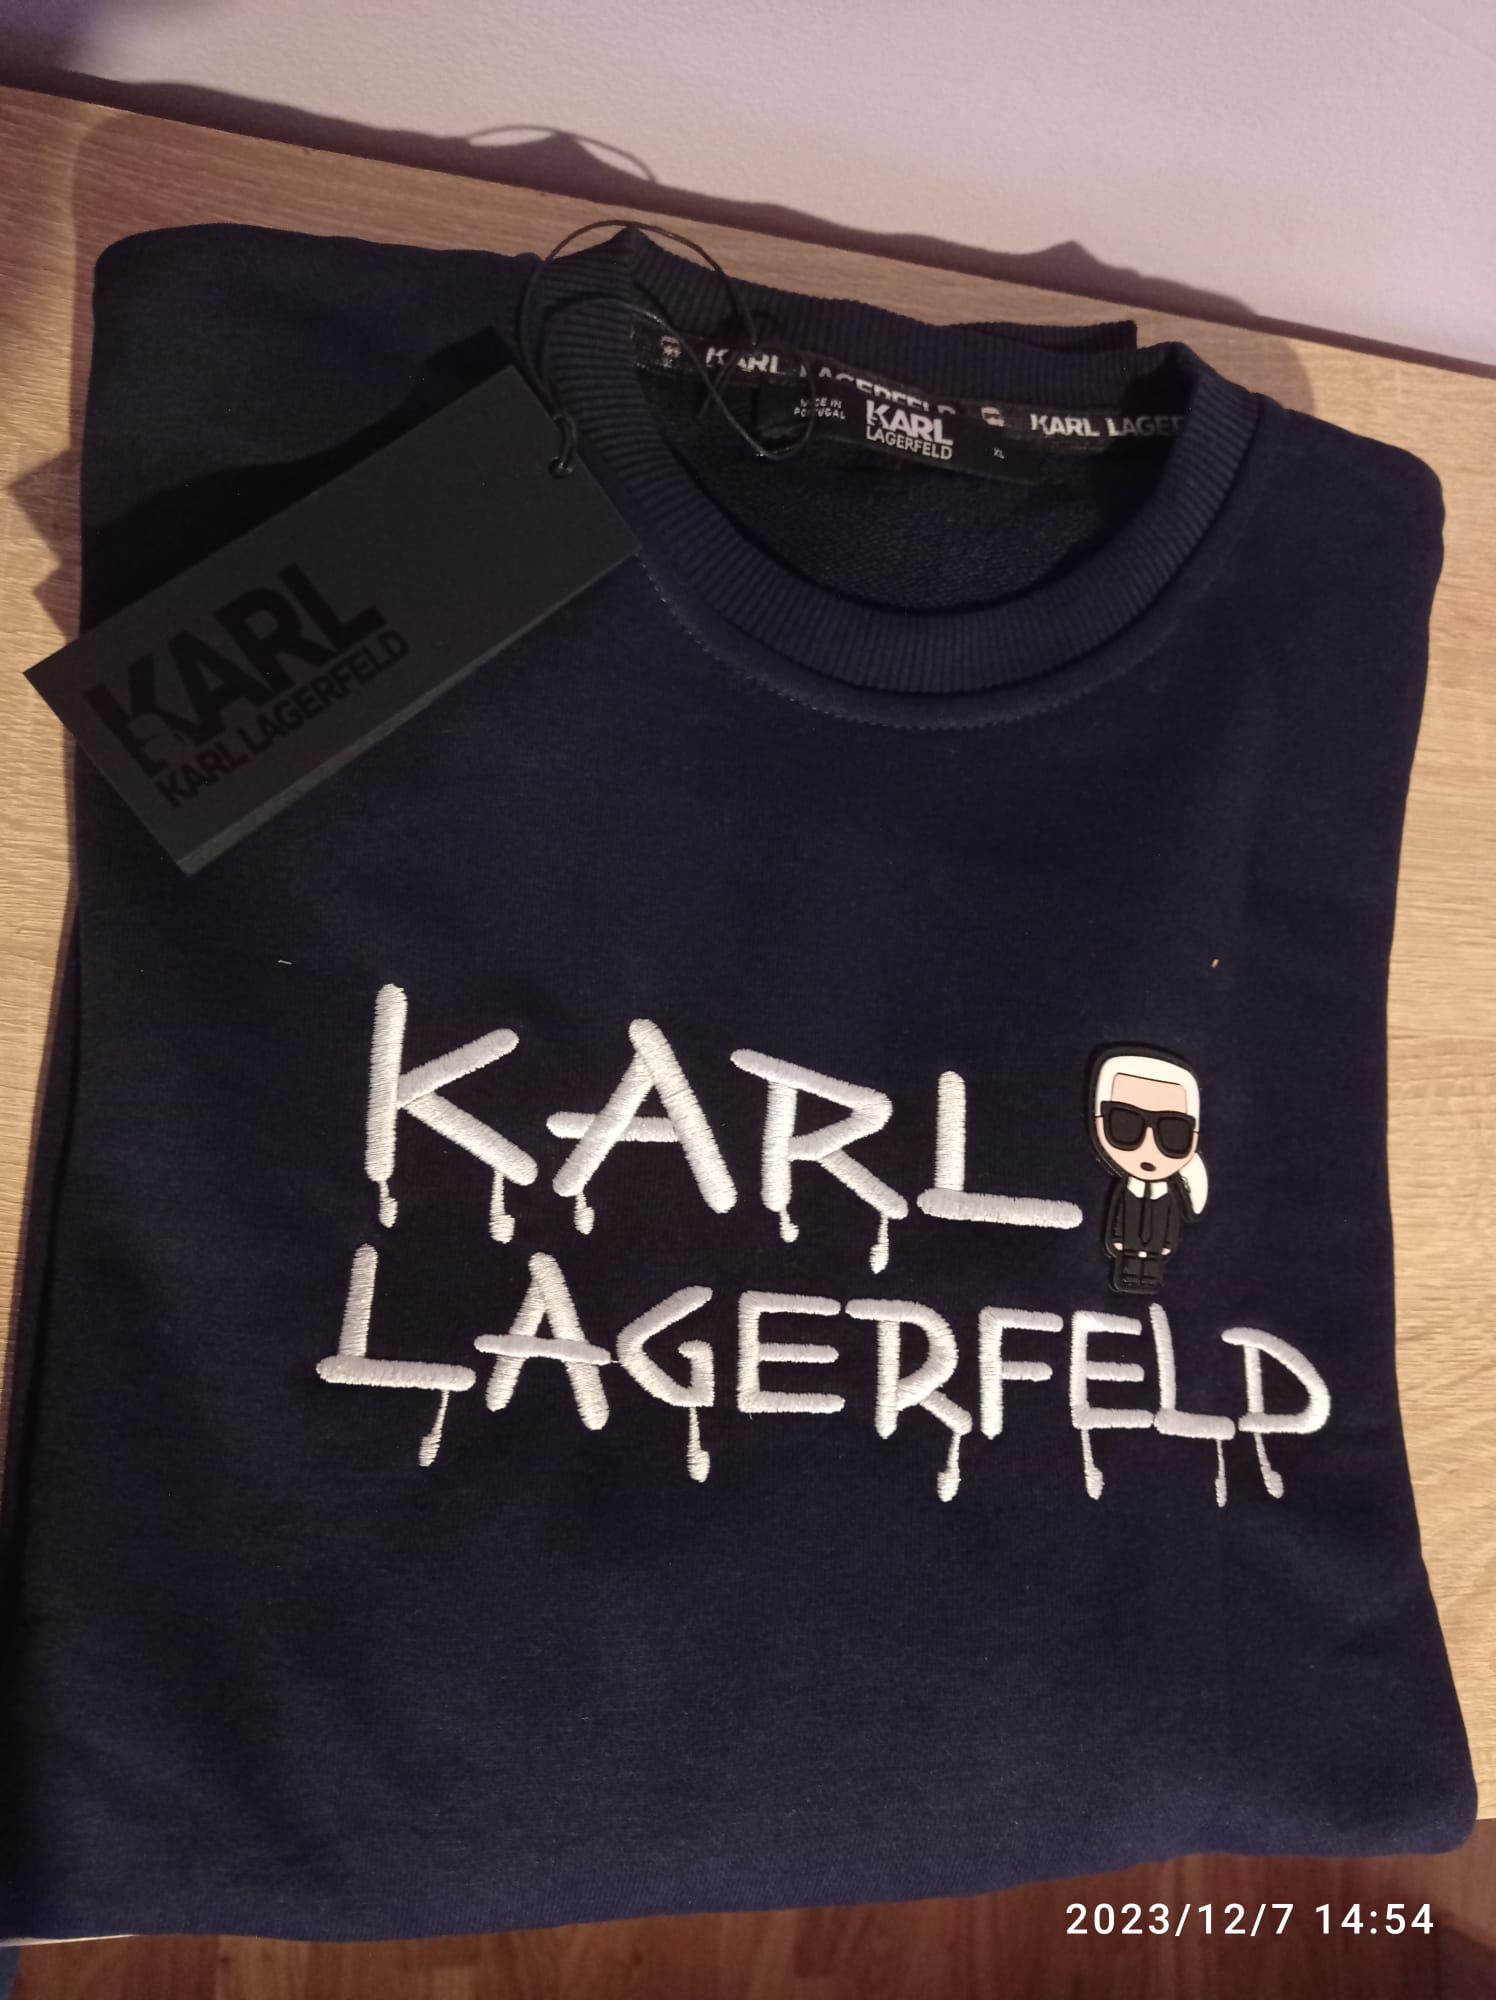 Bluza od KARL LEGERFELD w kolorze ciemno-granatowym.